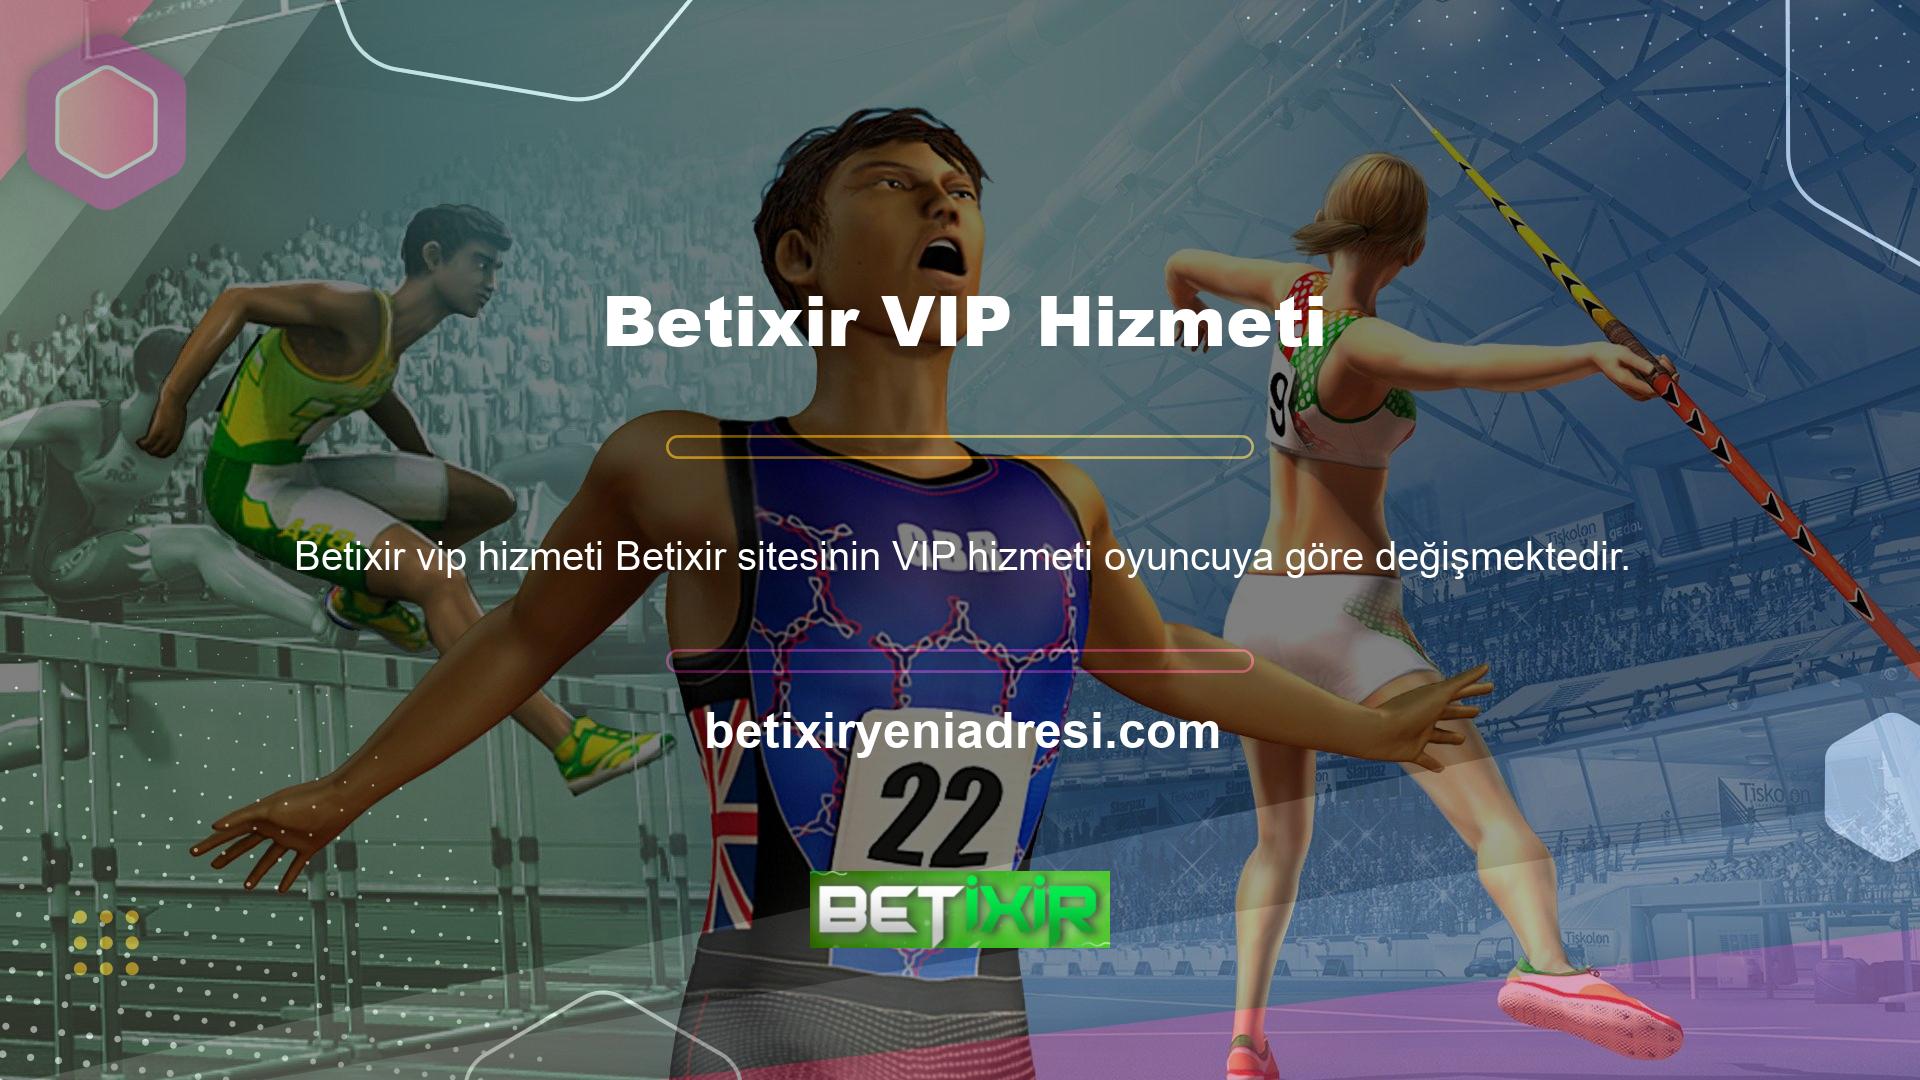 Oyun sitesinin VIP hizmetinde bir sorun mu var? kontrol sorusu Betixir, Türkiye'de çevrimiçi casino pazarını başlatan yüksek kaliteli özel bir platformdur